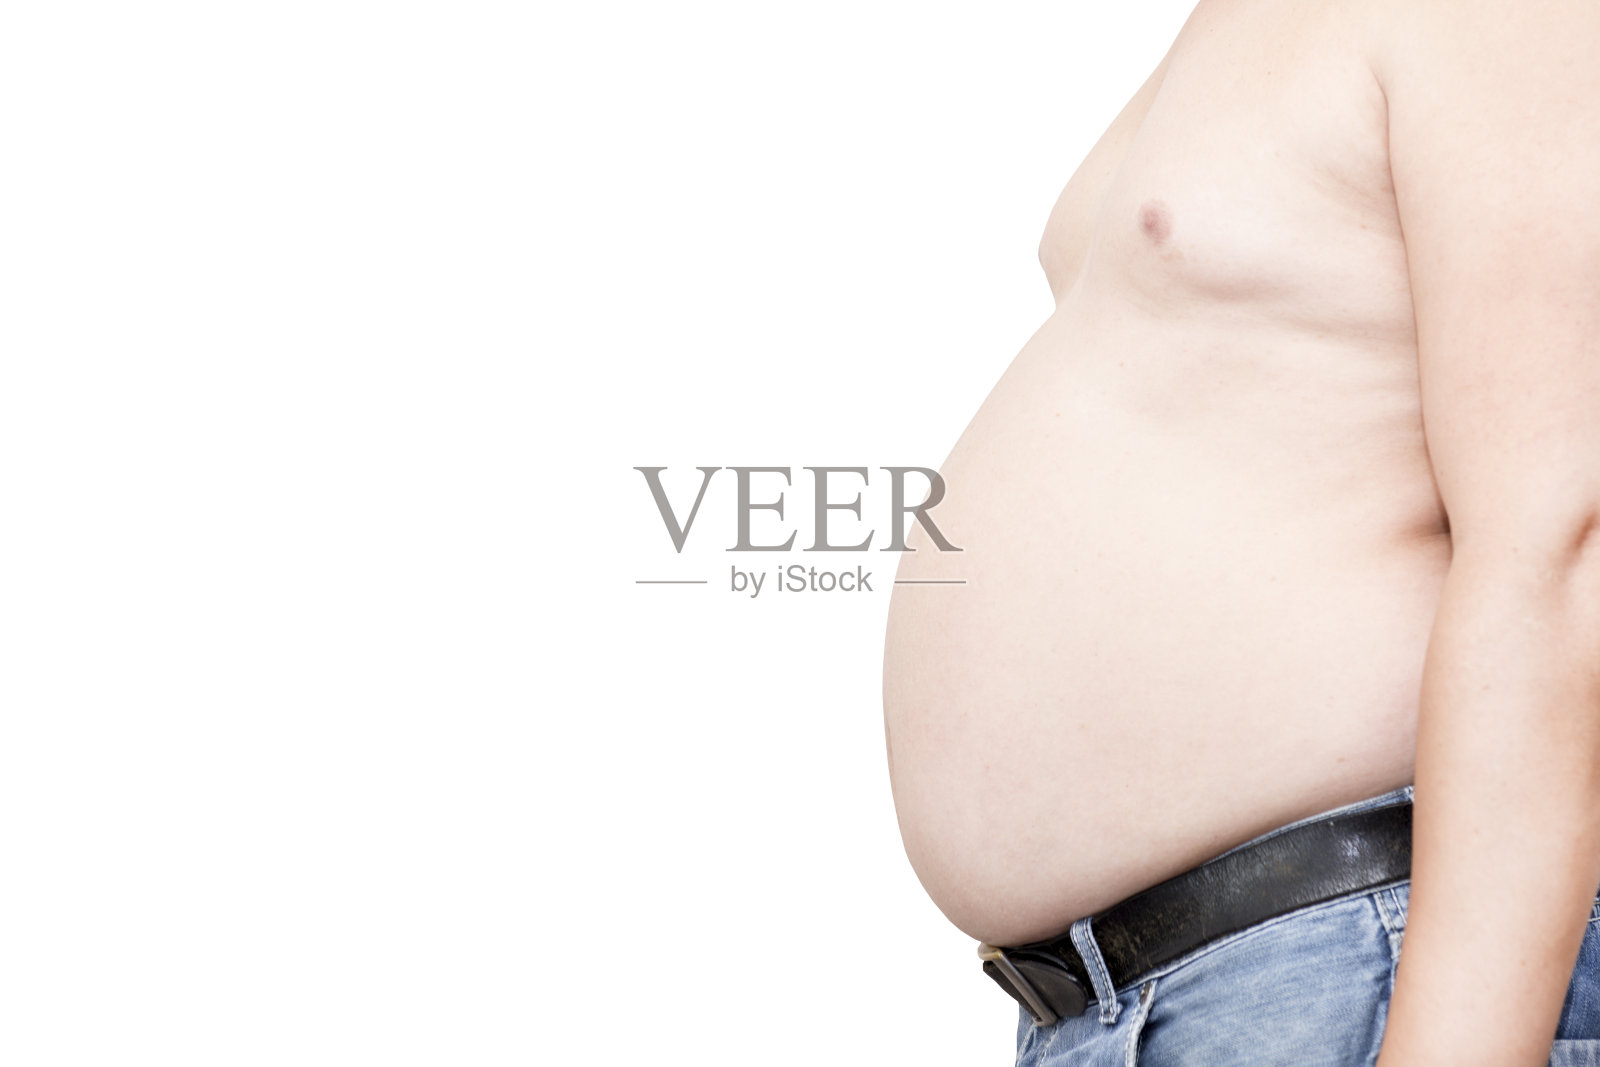 腹部肥胖的人大多从饮食行为上下手。照片摄影图片